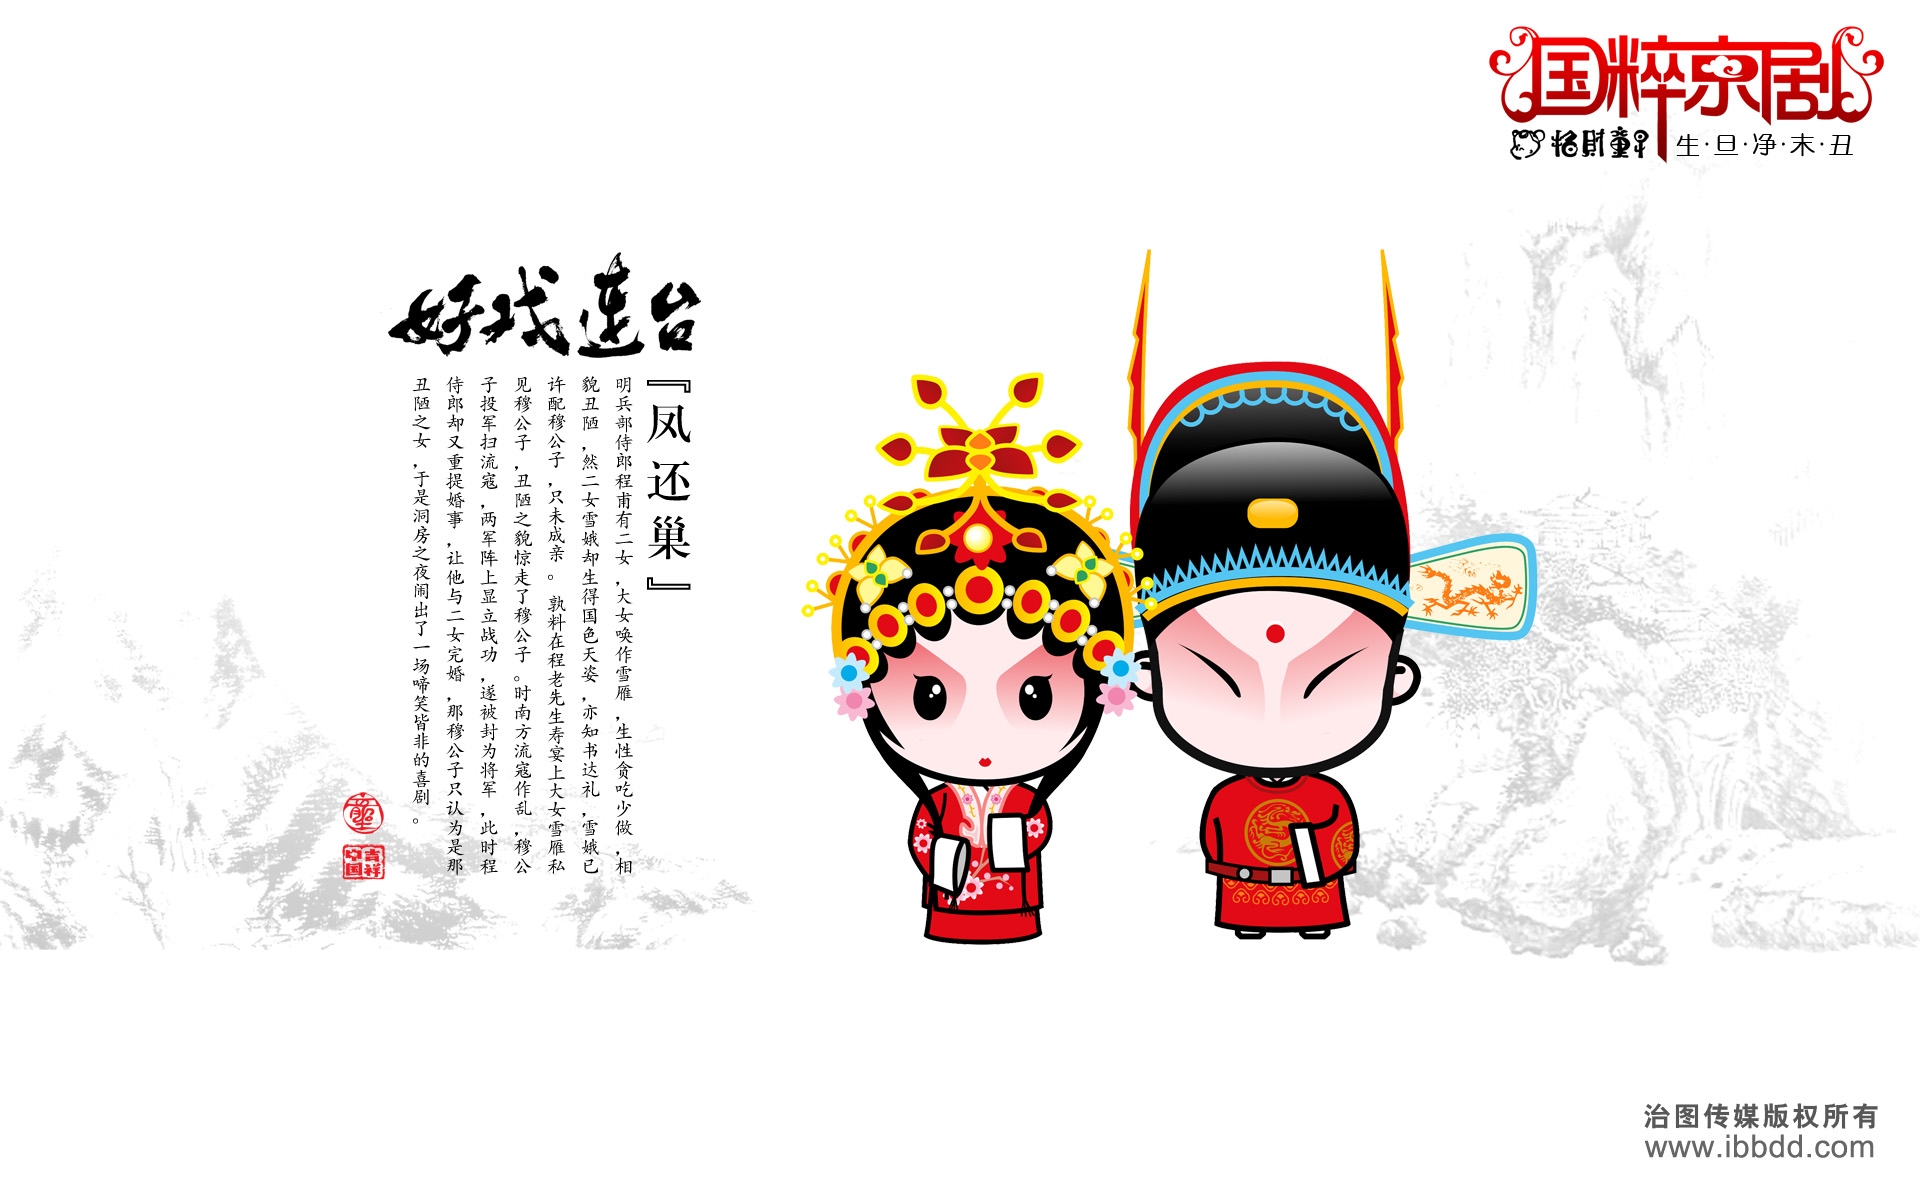 Free Beijing Opera Stock Wallpapers